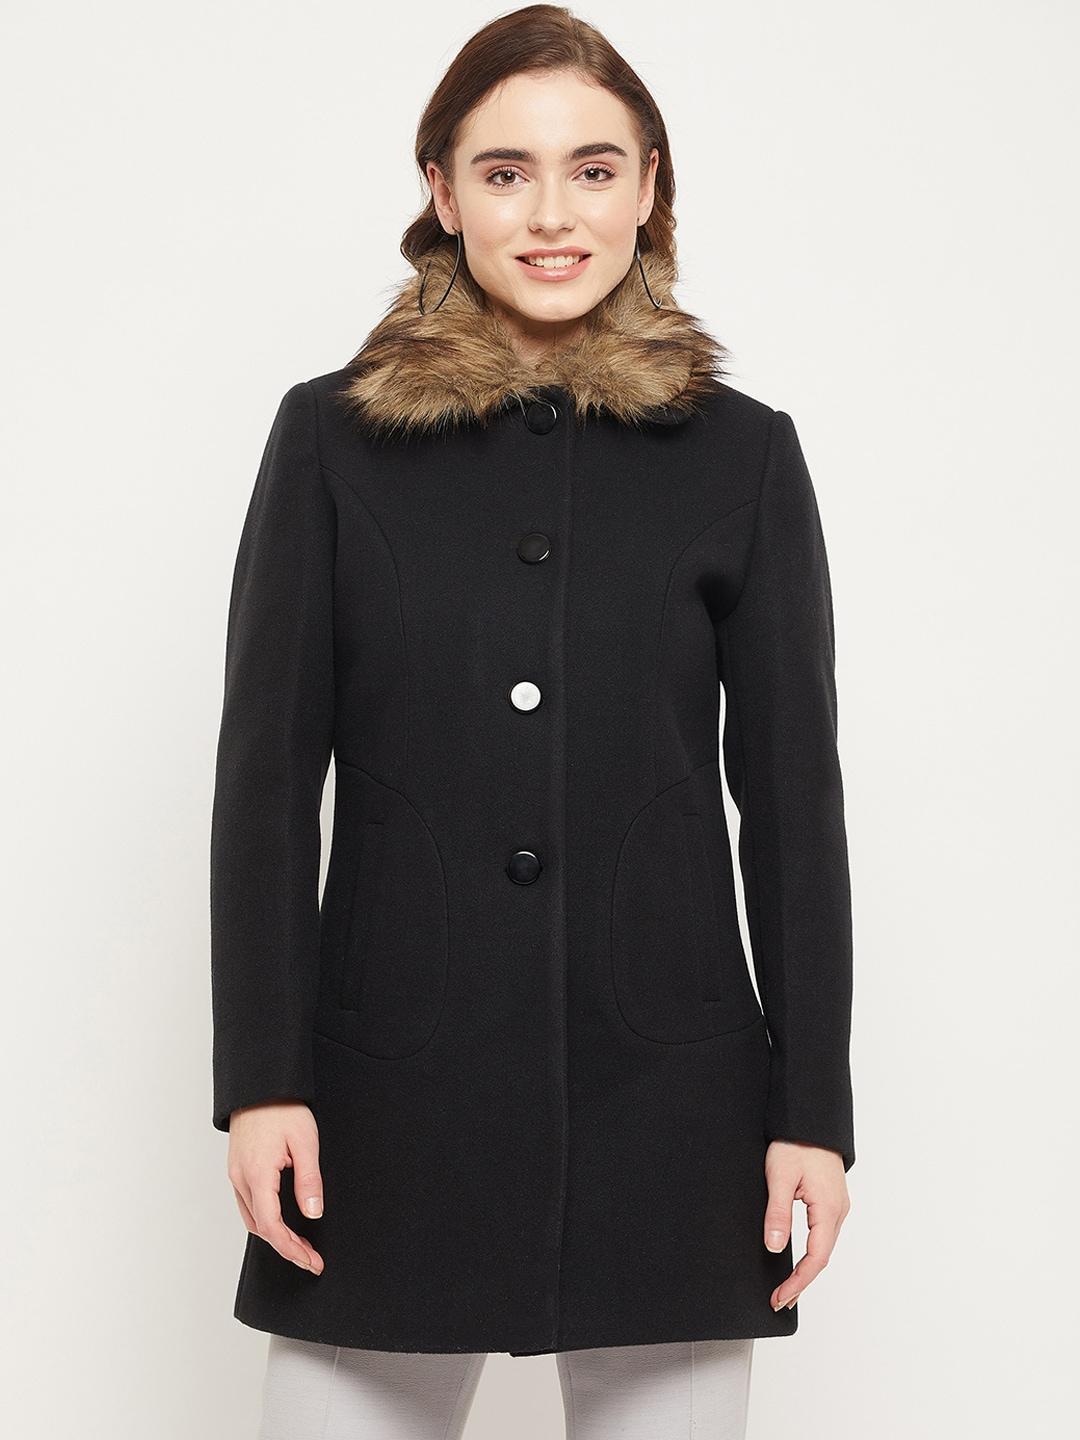 duke-women-wool-single-breasted-fur-collar-winter-overcoat